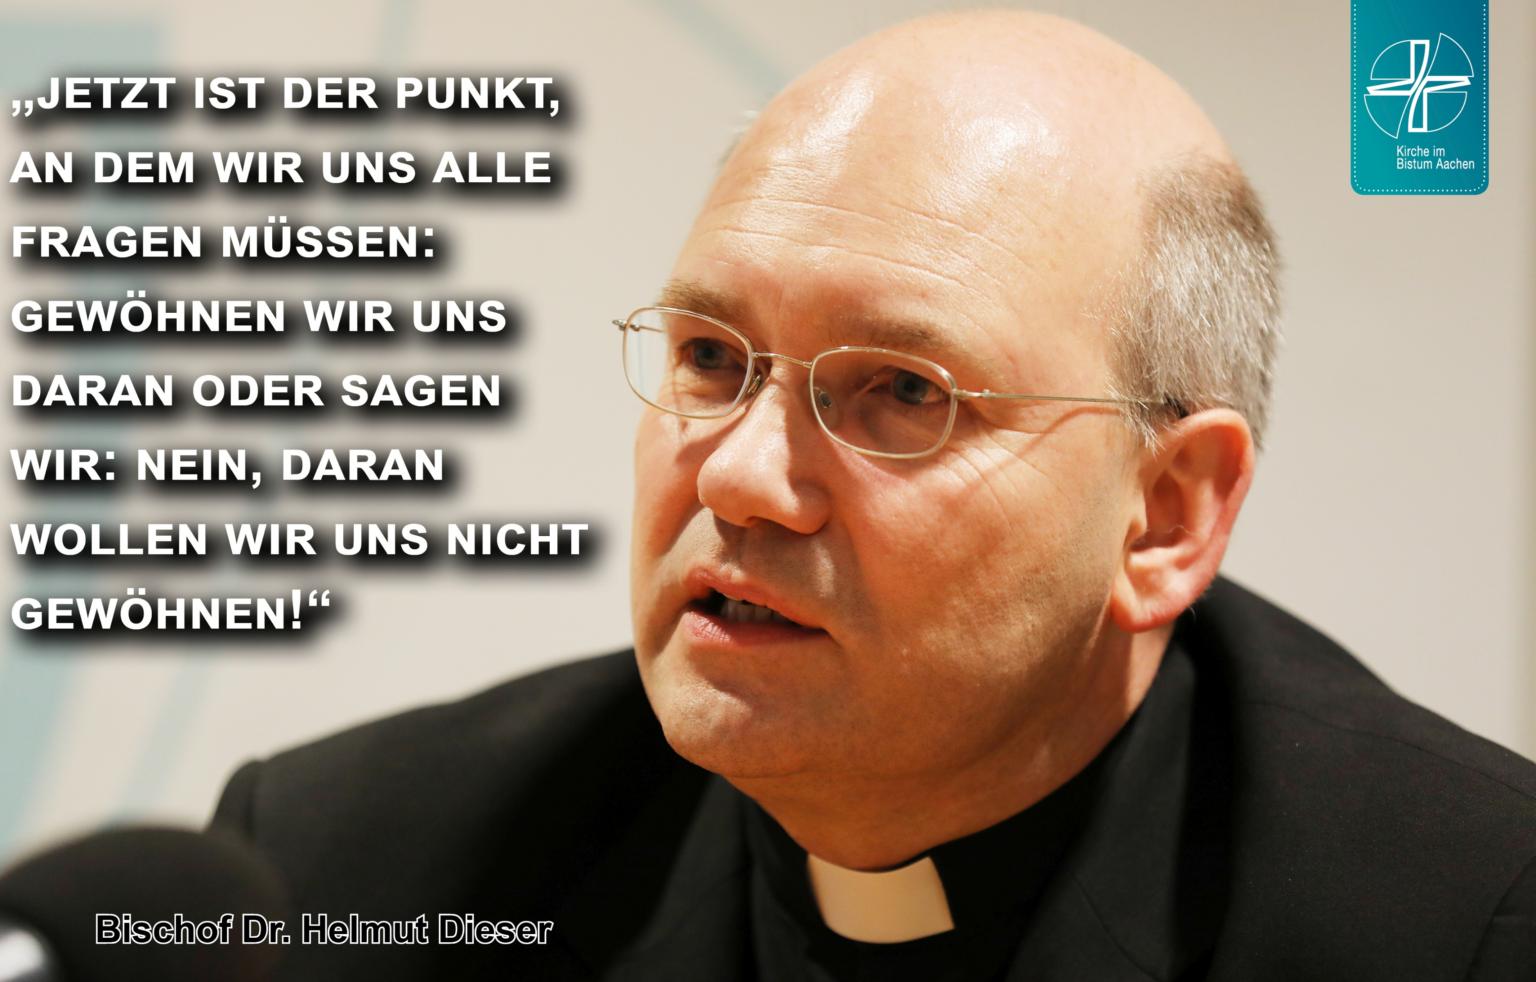 Bischof Dr. Helmut Dieser zum Anschlag auf die Synagoge in Halle (c) Bistum Aachen / Andreas Steindl